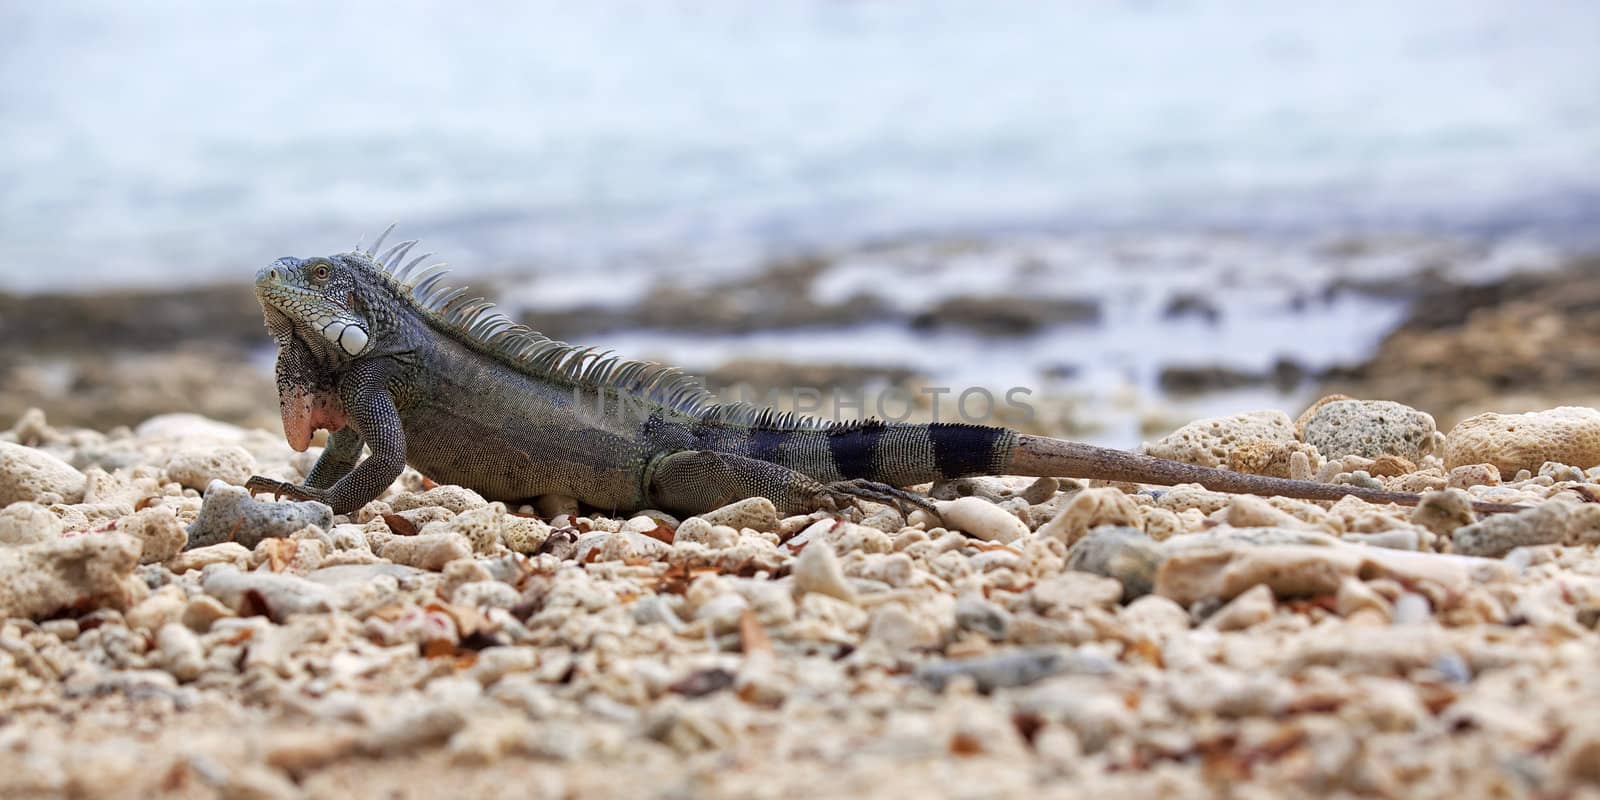 Iguana on Port Marie beach on Curacao